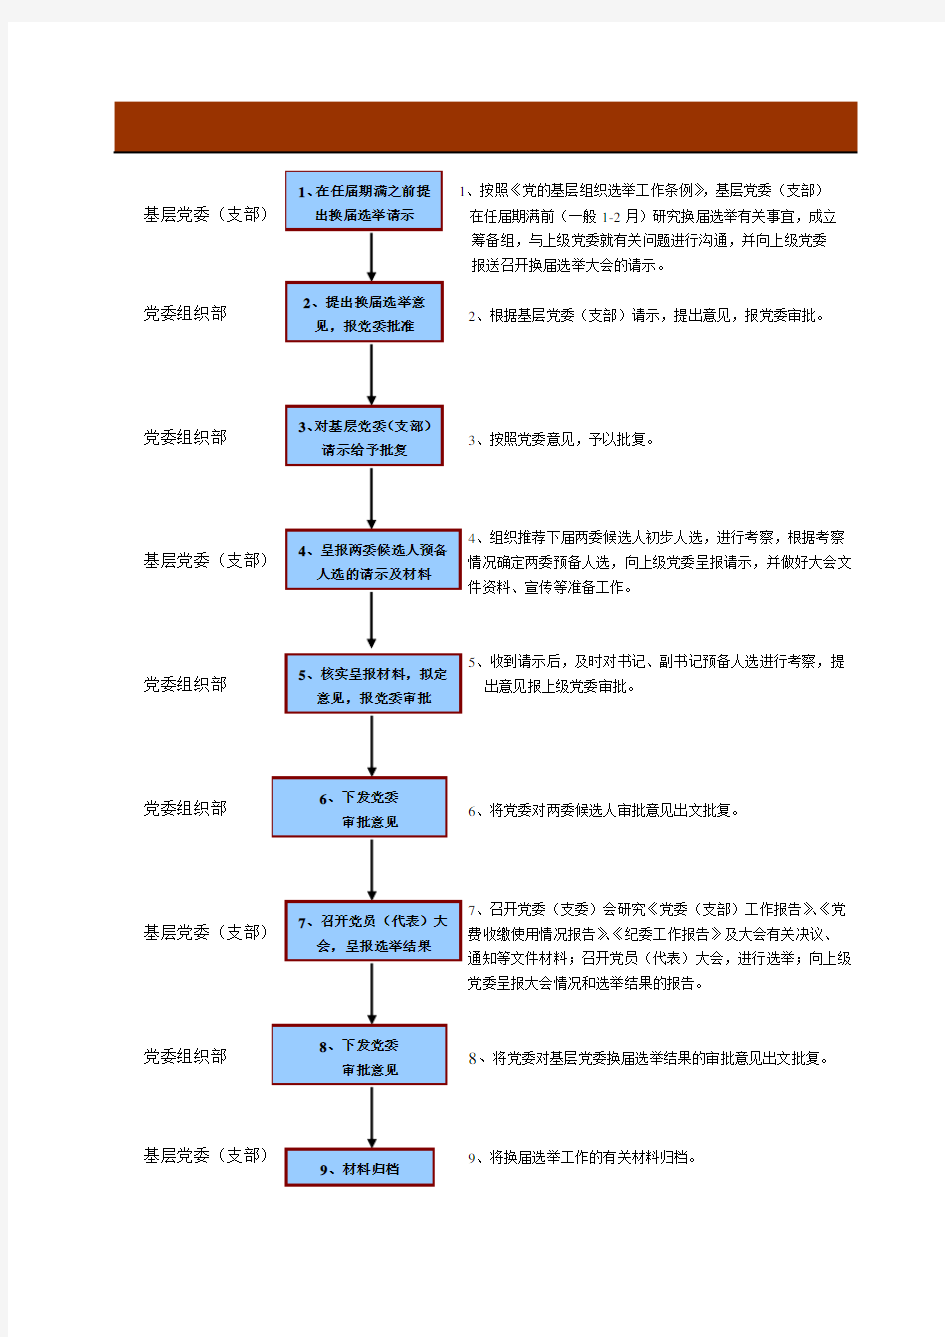 基层党组织换届选举工作流程图